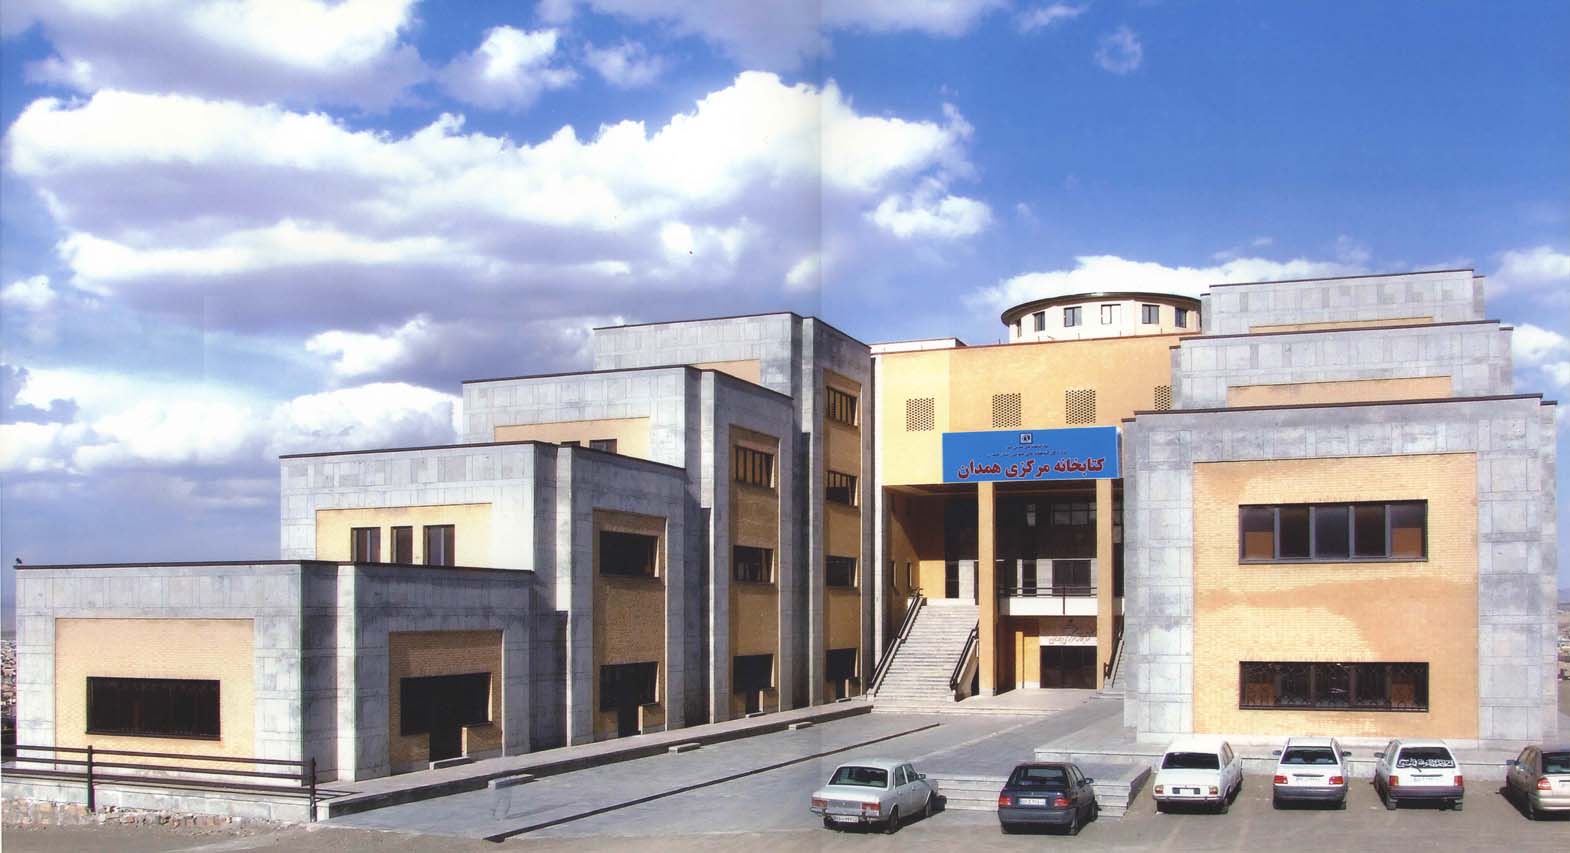 کتابخانه مرکزی استان همدان در هفته کتاب برنامه های متنوعی برگزار کرد